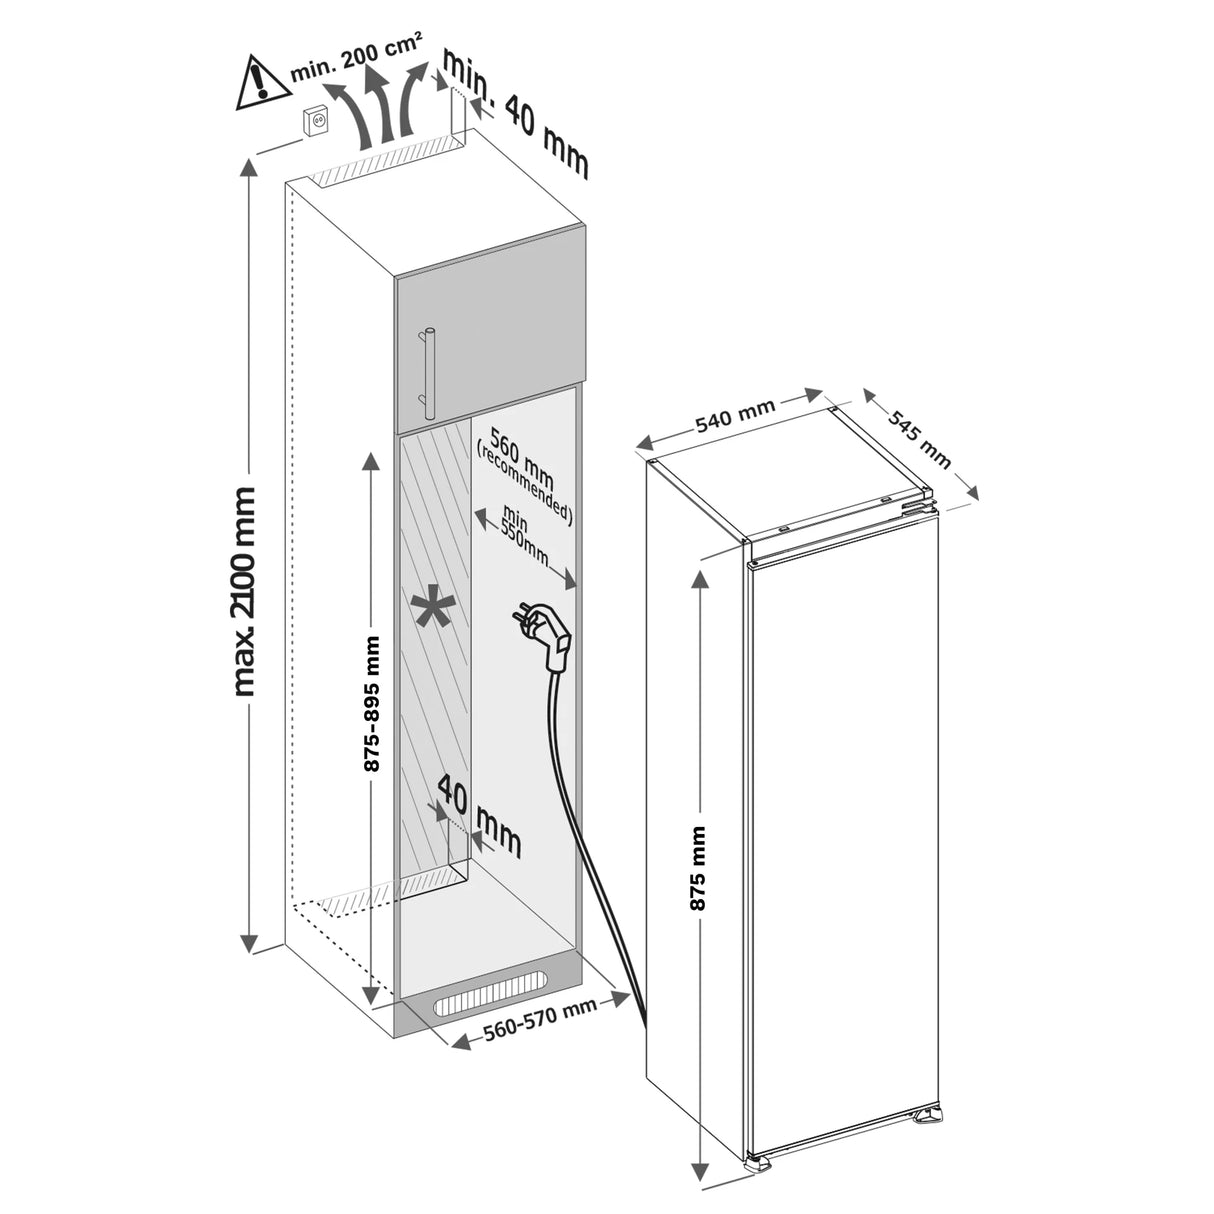 Inventum  IKV0882S Inbouw koelkast met vriesvak nismaat 88 cm sleepdeur systeem